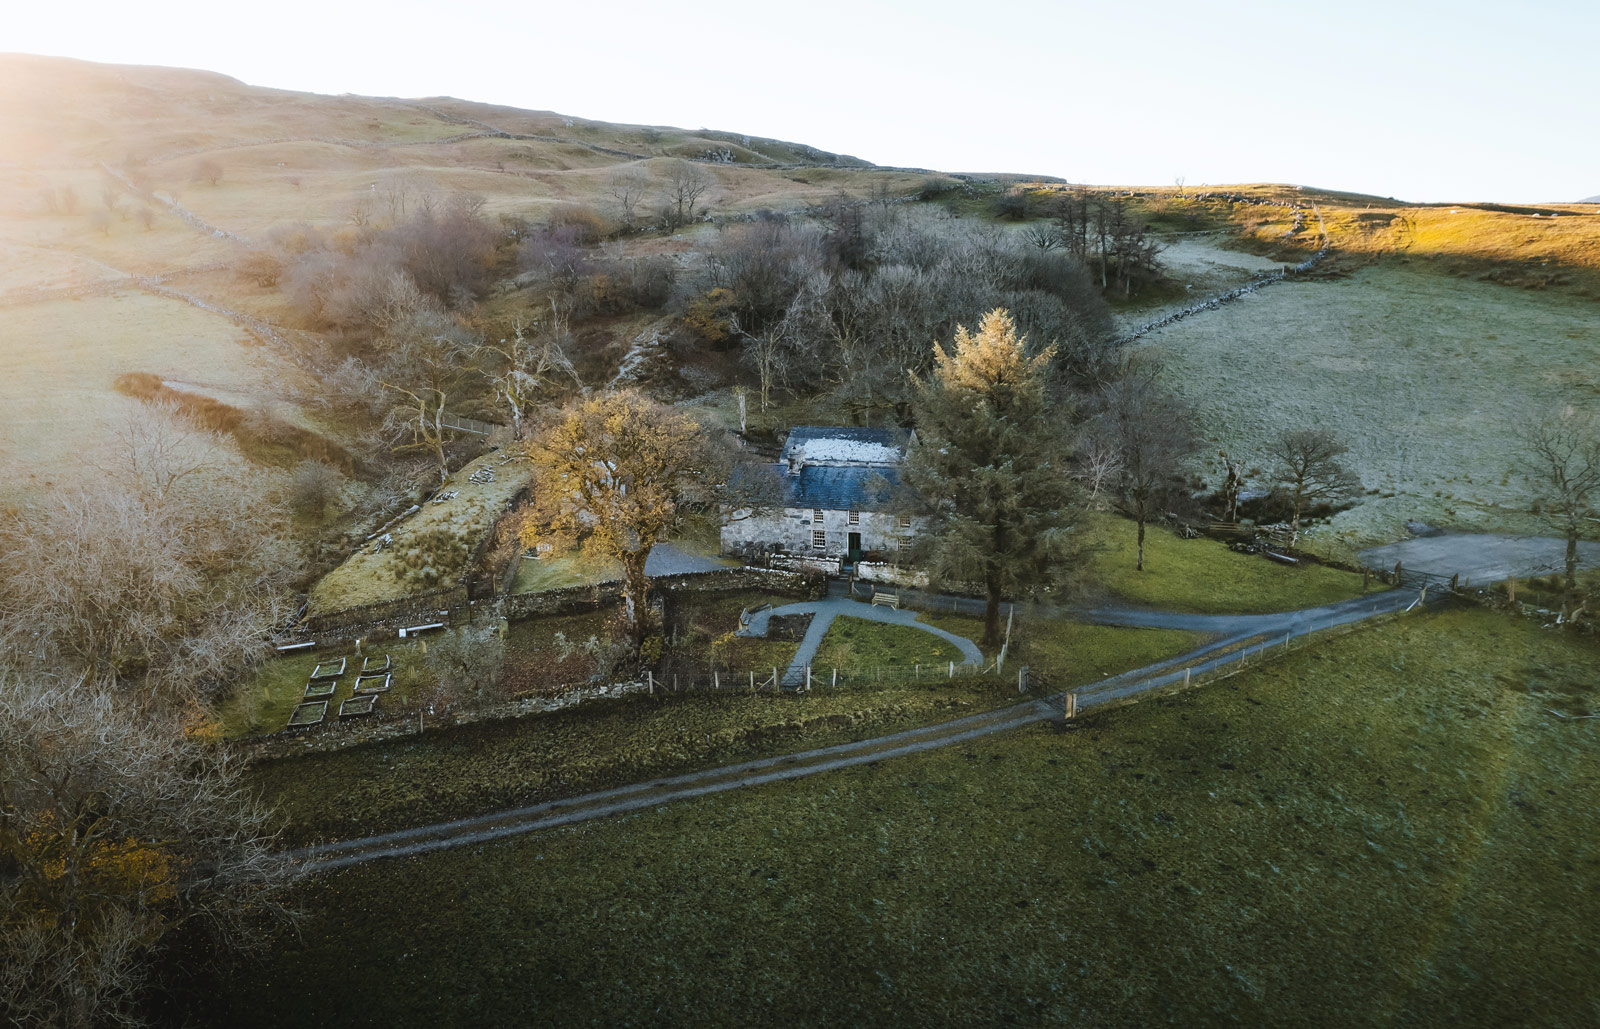 An aerial photograph of the Yr Ysgwrn farmhouse